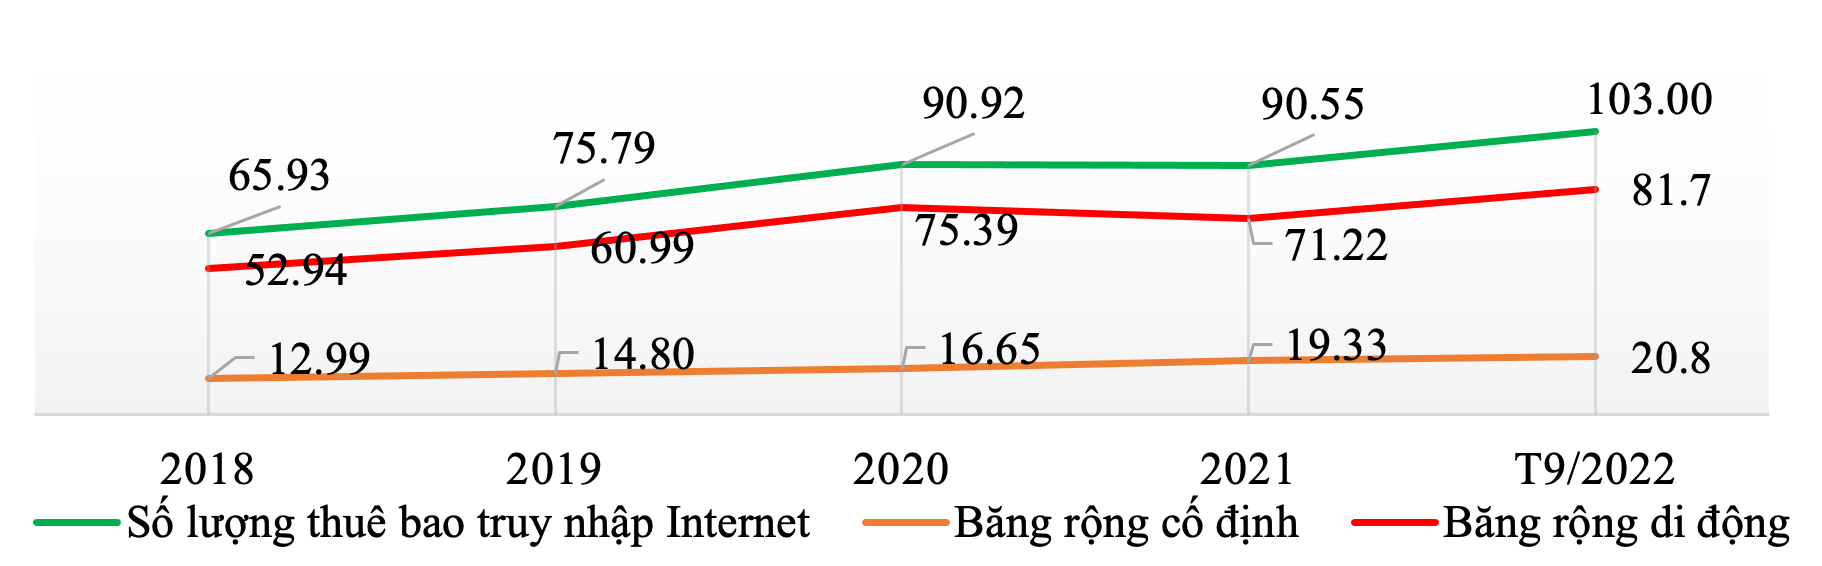 Tốc độ truy nhập Internet Việt Nam cao hơn mặt bằng chung thế giới - Ảnh 2.